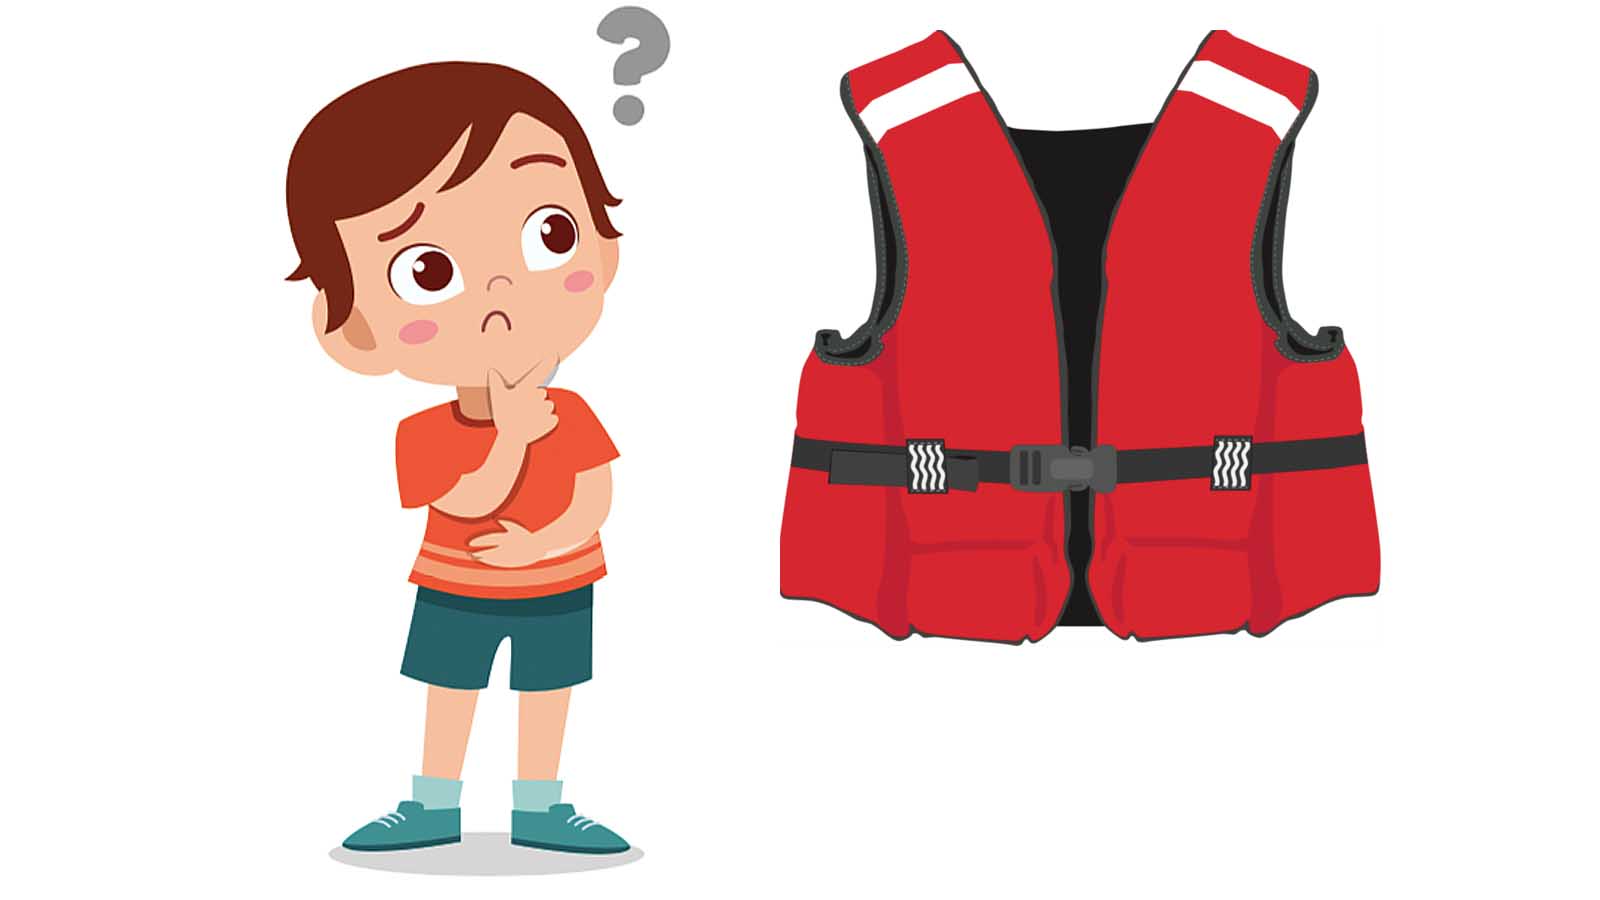 Foto: Shutterstock / Barnevakten. Bildet viser et barn som ser på en redningsvest i voksen størrelse.